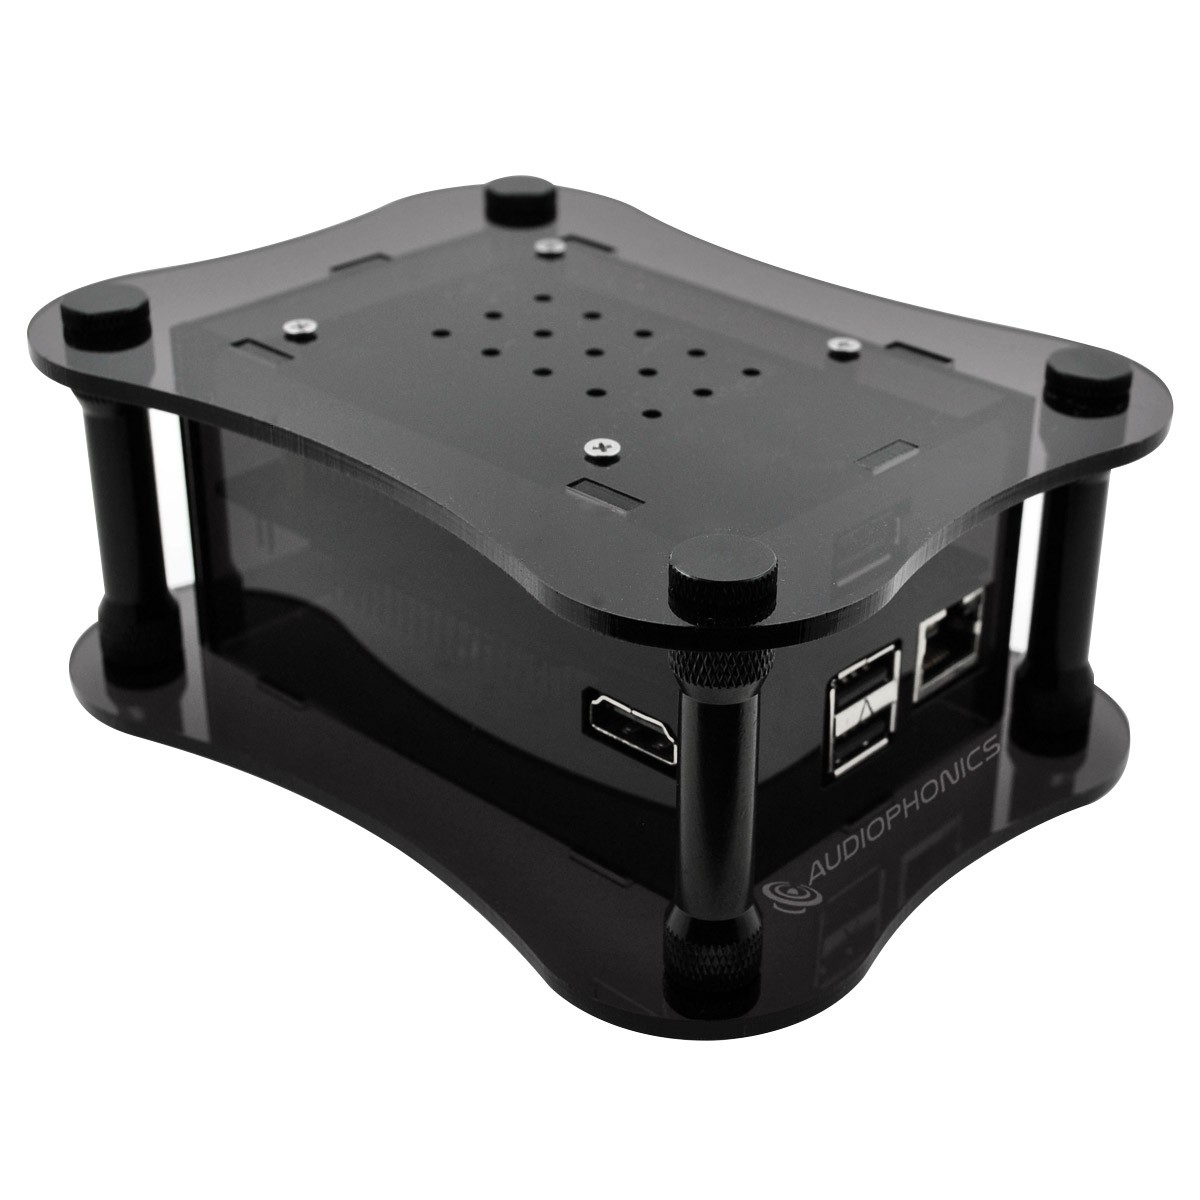 ALLO USBRIDGE Acrylique Noir - Lecteur réseau audio Squeezelite DietPi ROON pour DAC USB